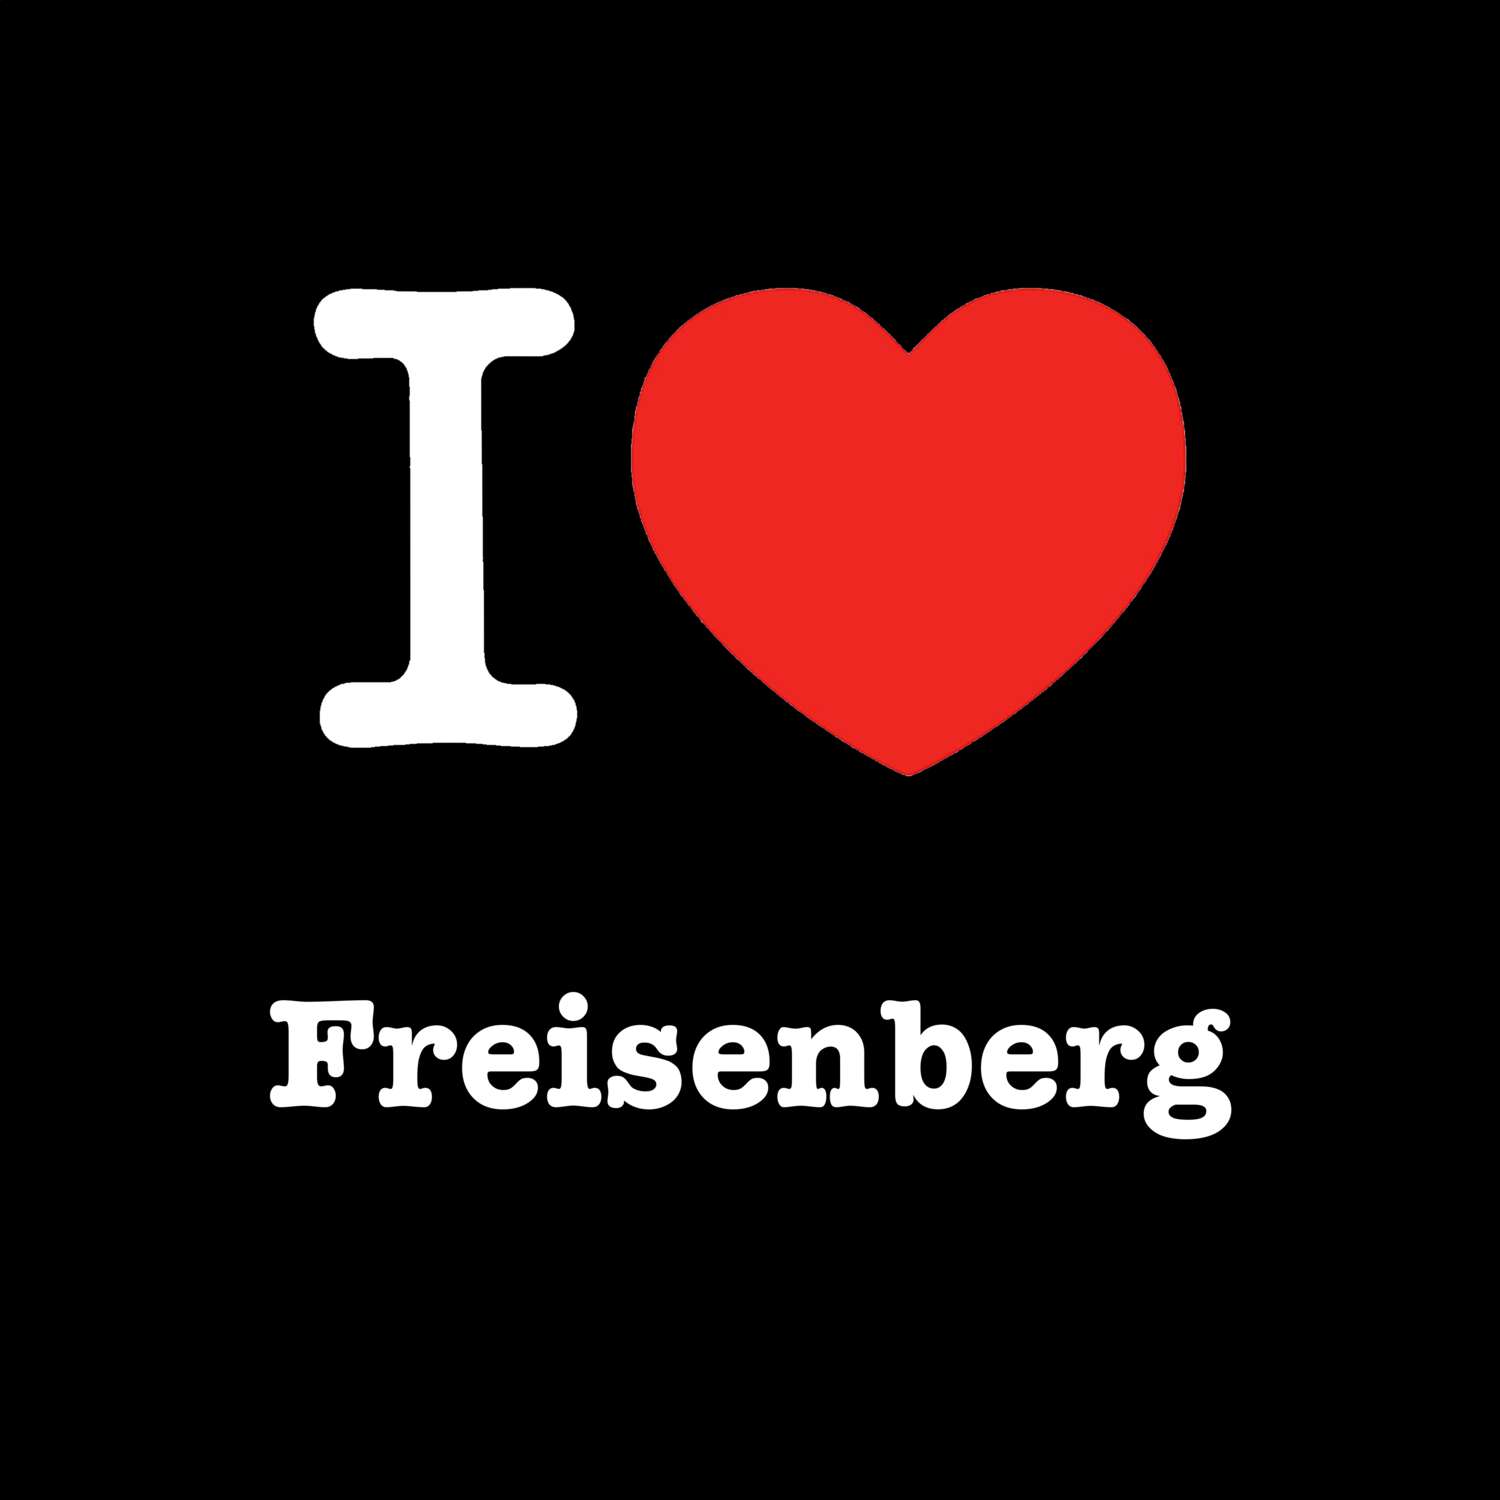 Freisenberg T-Shirt »I love«